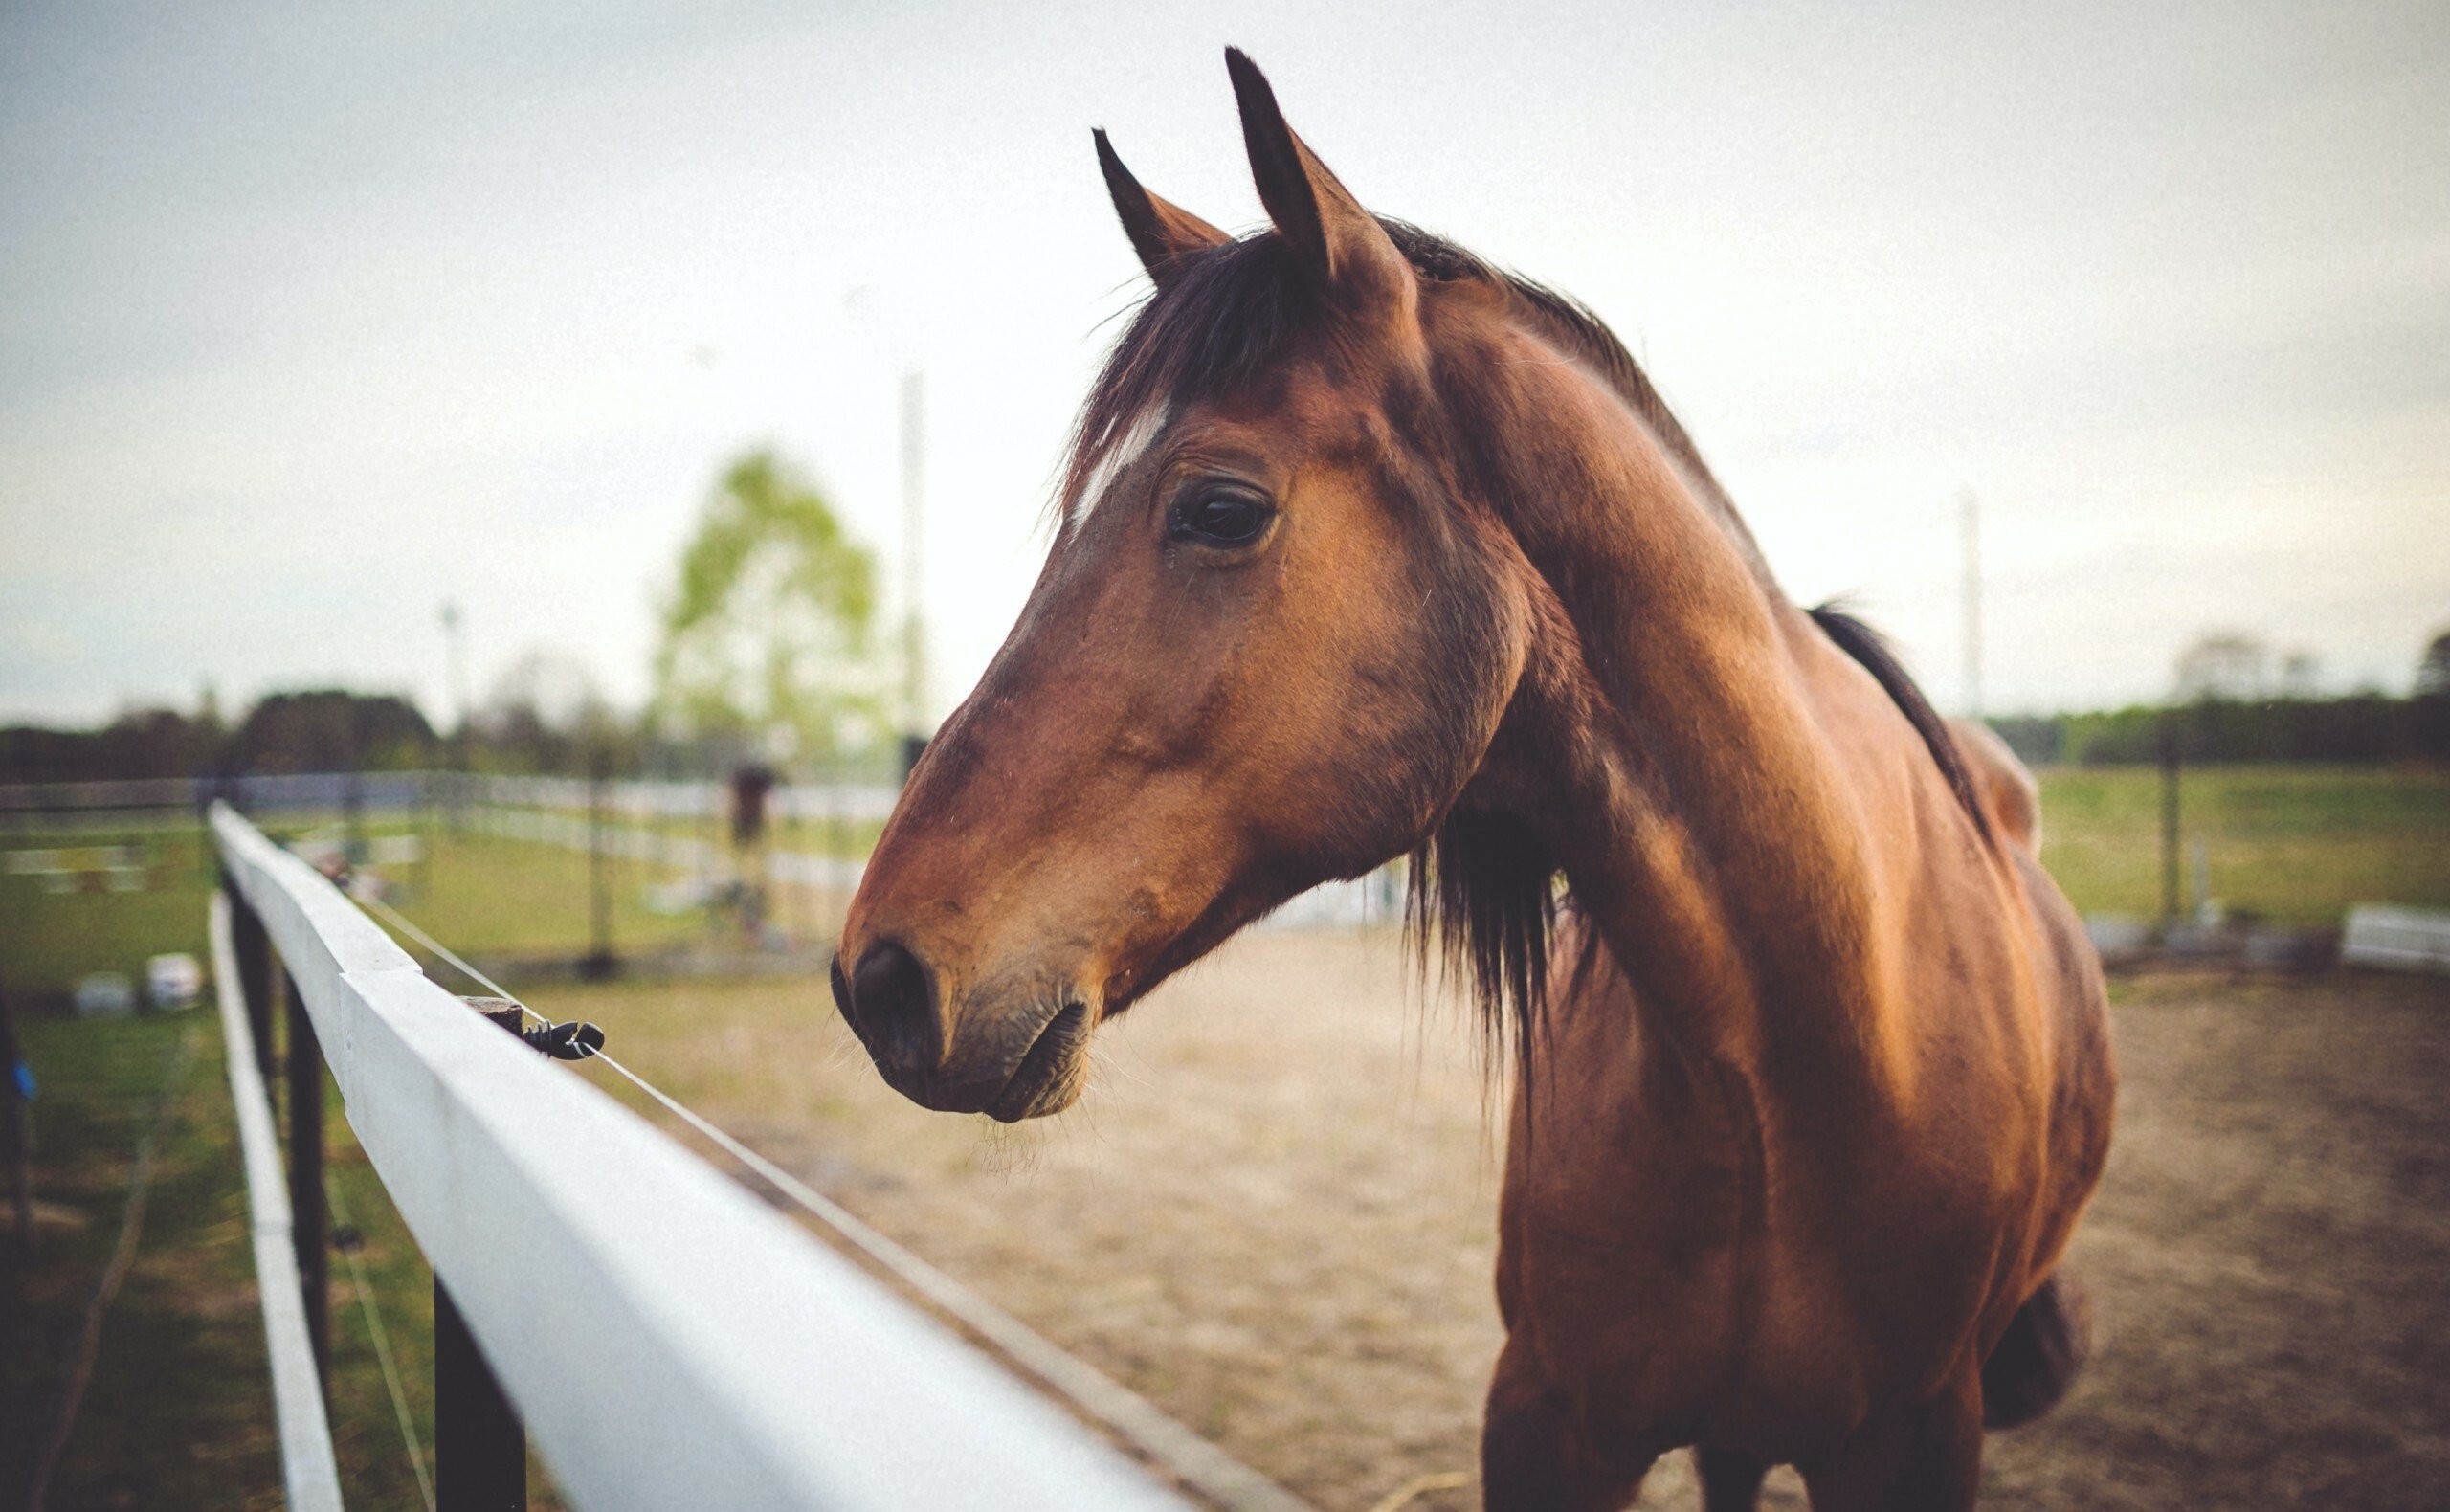 Pferdehaftpflichtversicherung ab 68,78€ im Jahr. Finden Sie mit wenigen Klicks die aktuell besten Pferdehaftpflicht Tarife am Markt ⭐